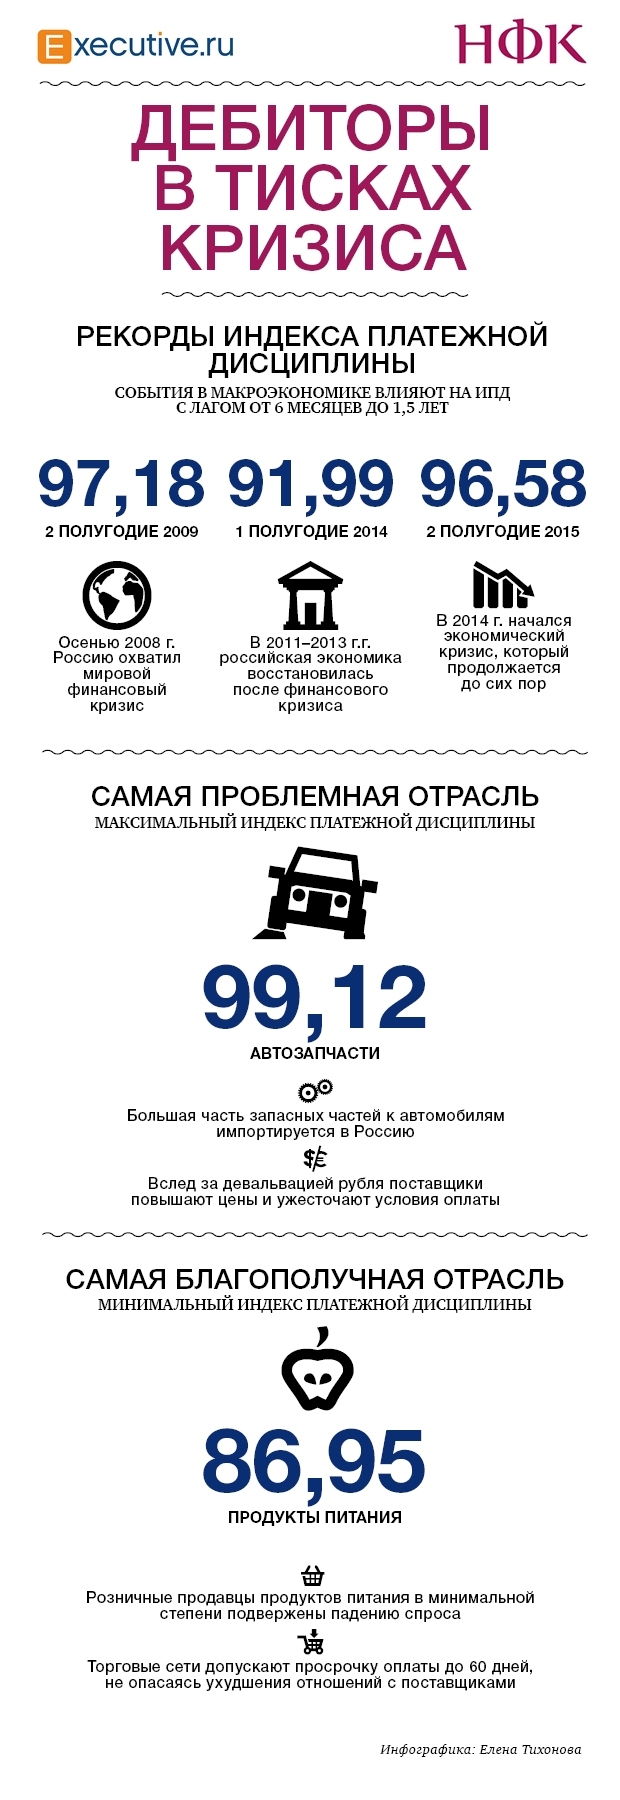 Платежная дисциплина в России в 2016 году